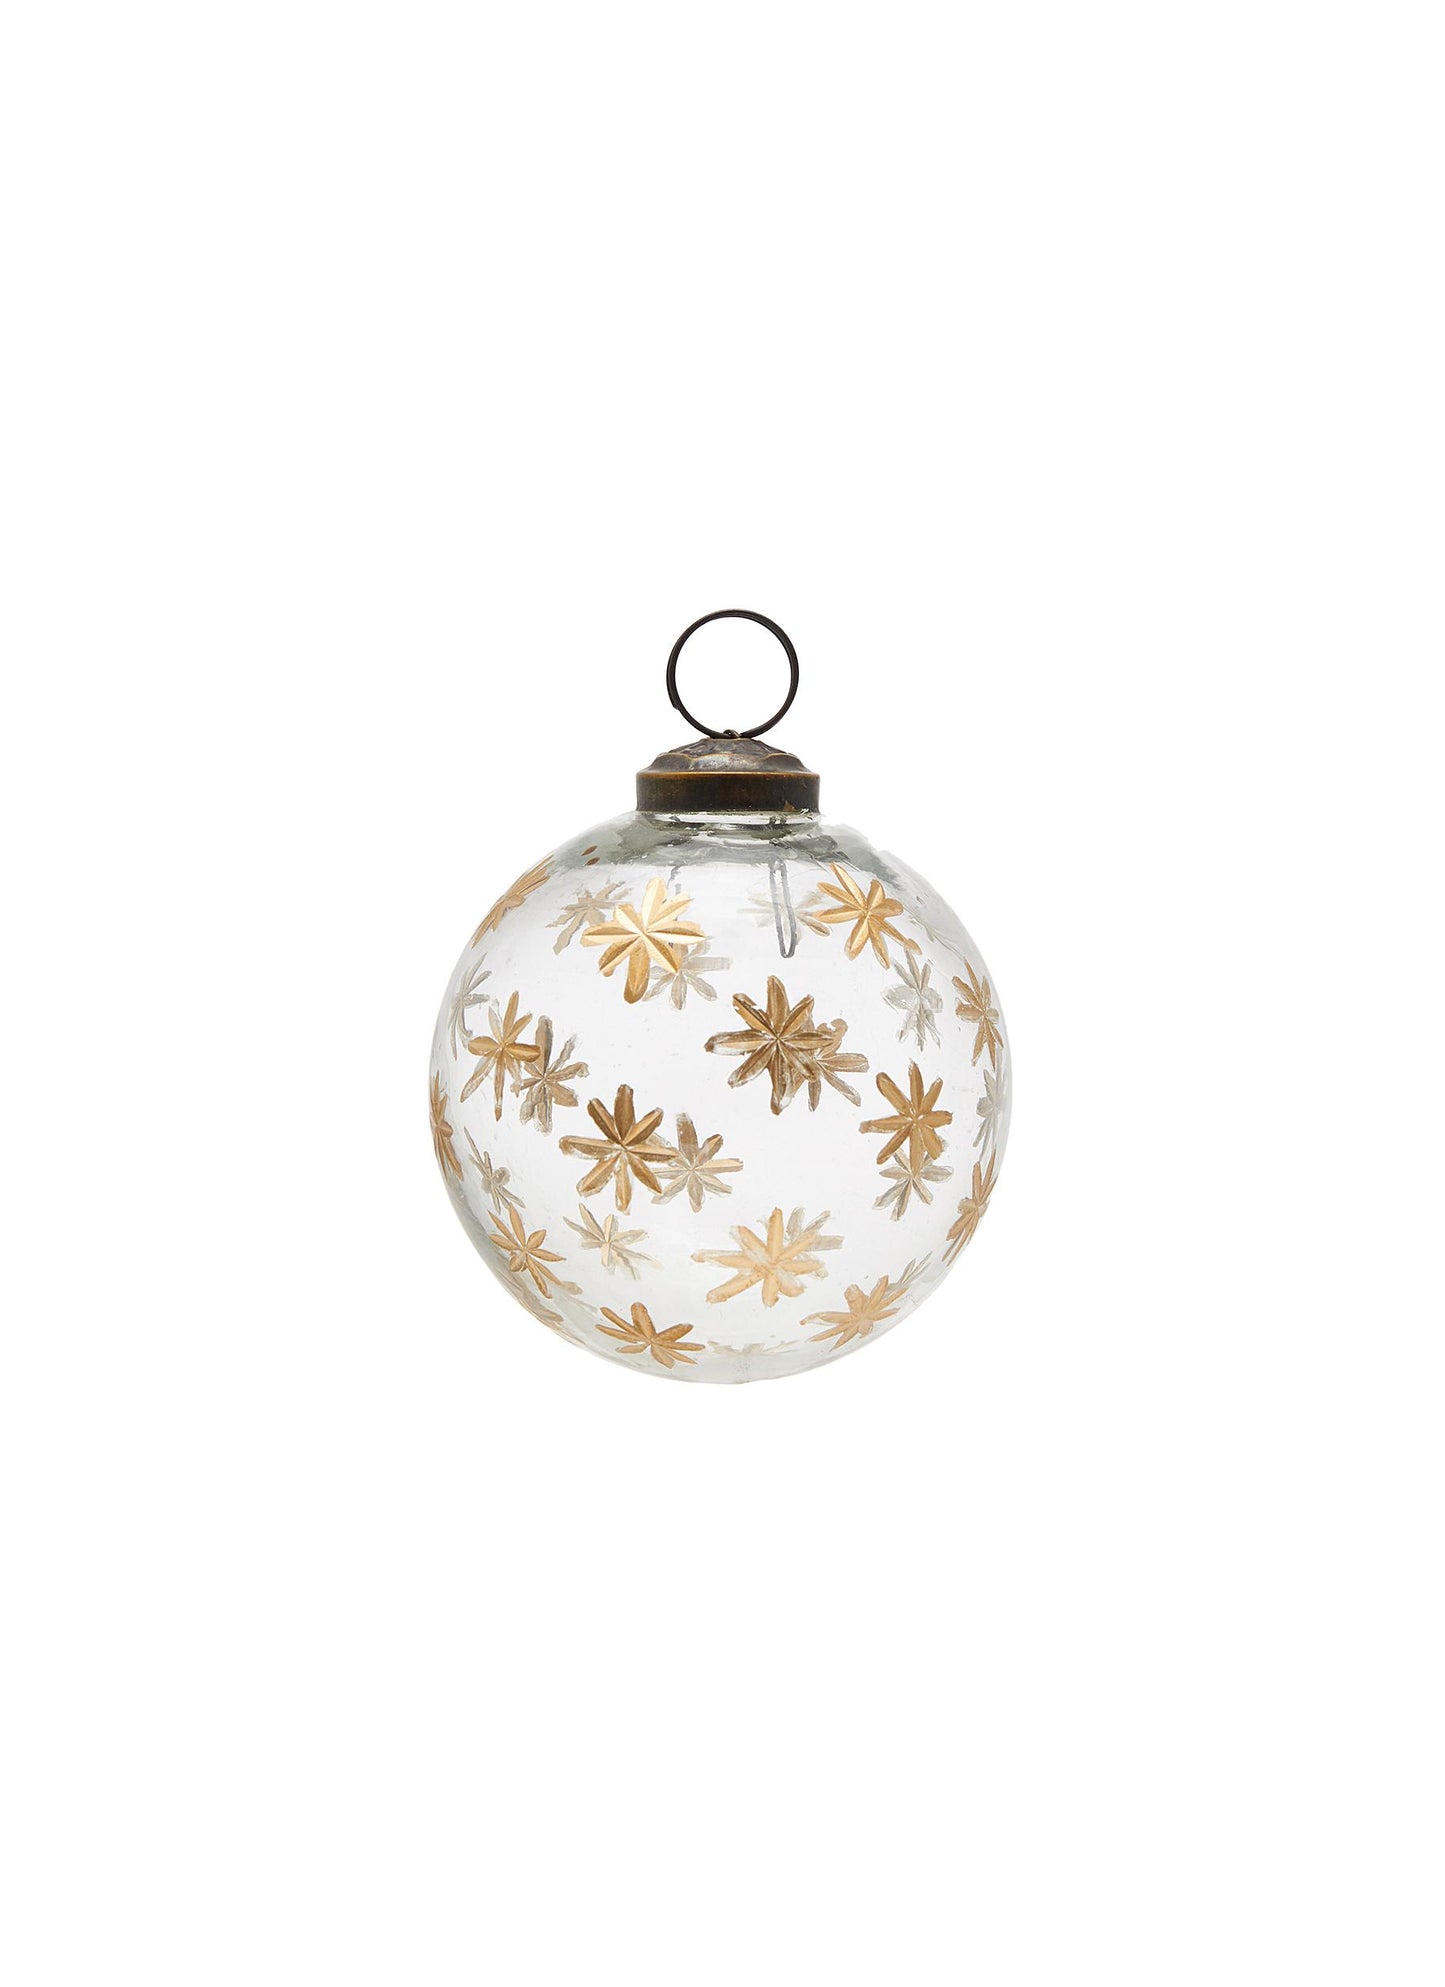 Glass Ball Clear w/ Gold Cutting Stars Ornament